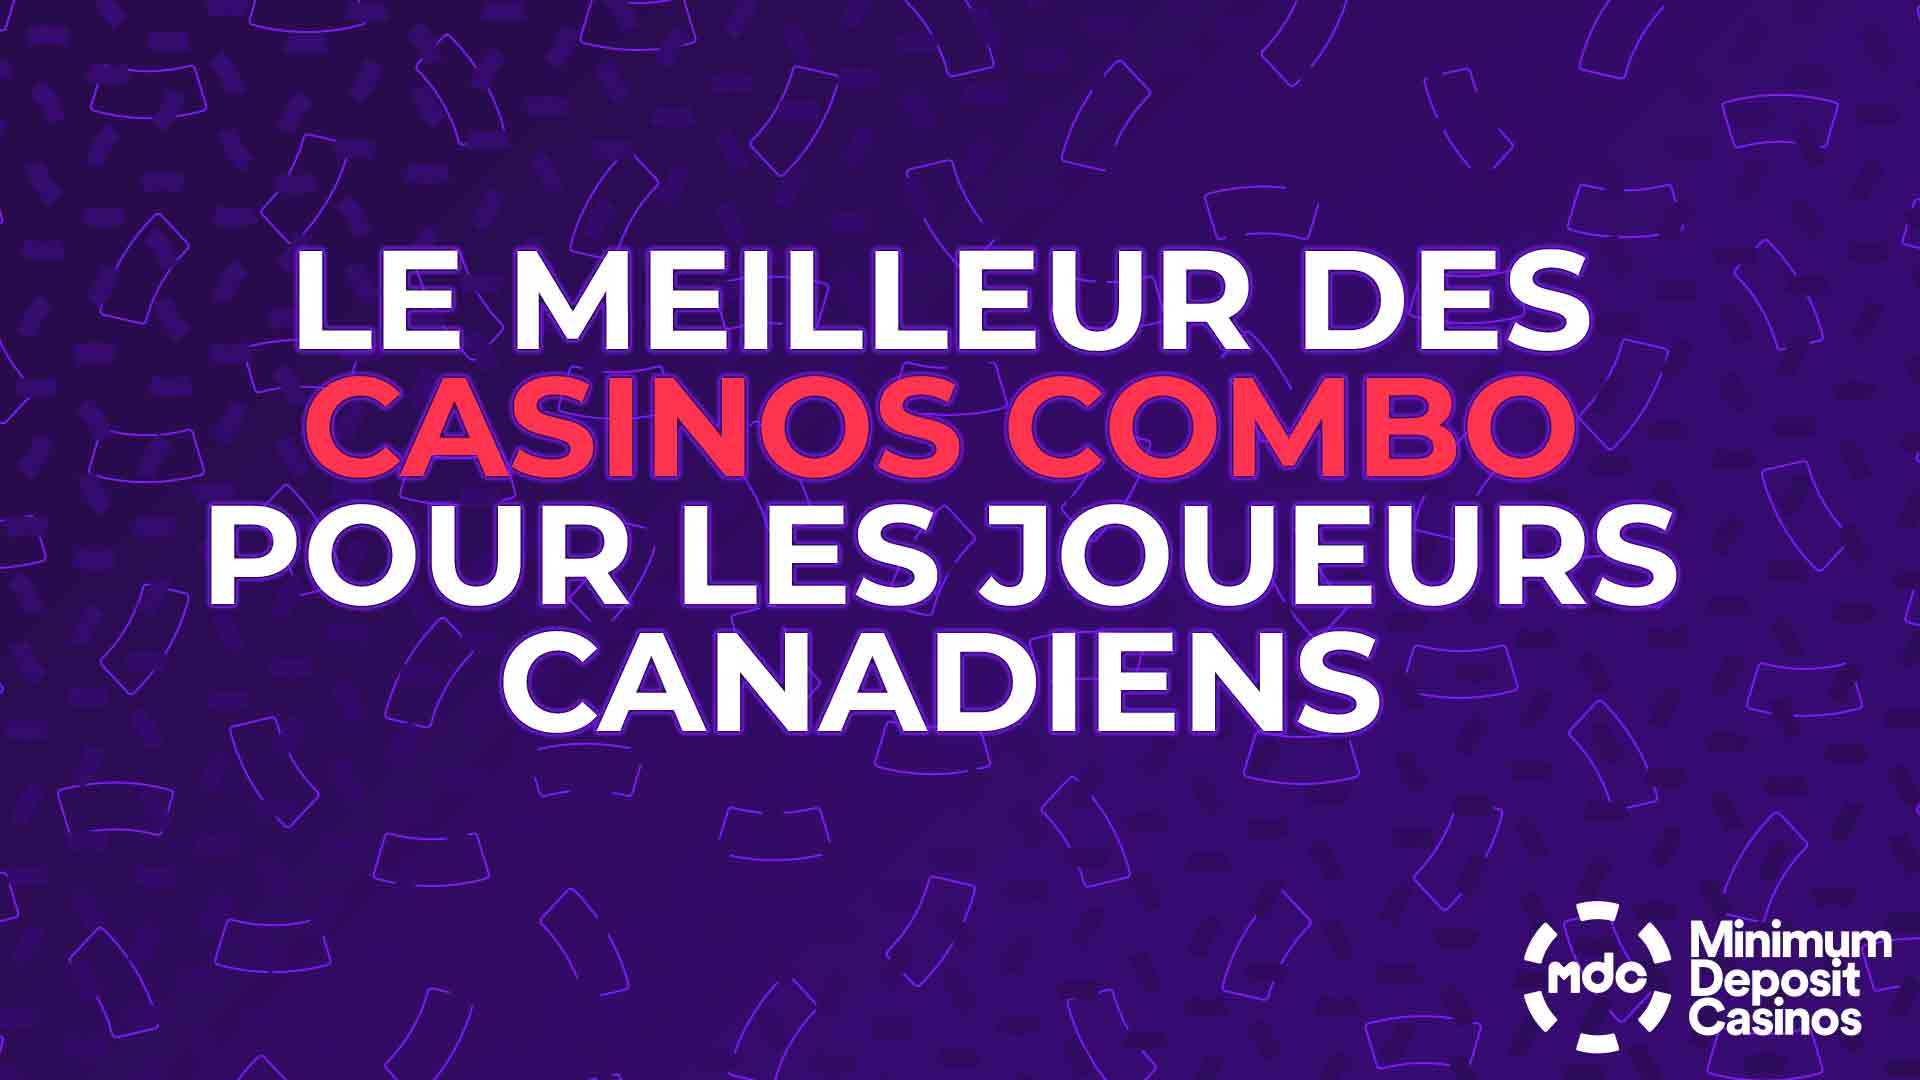 Le meilleur des casinos combo pour les joueurs canadiens